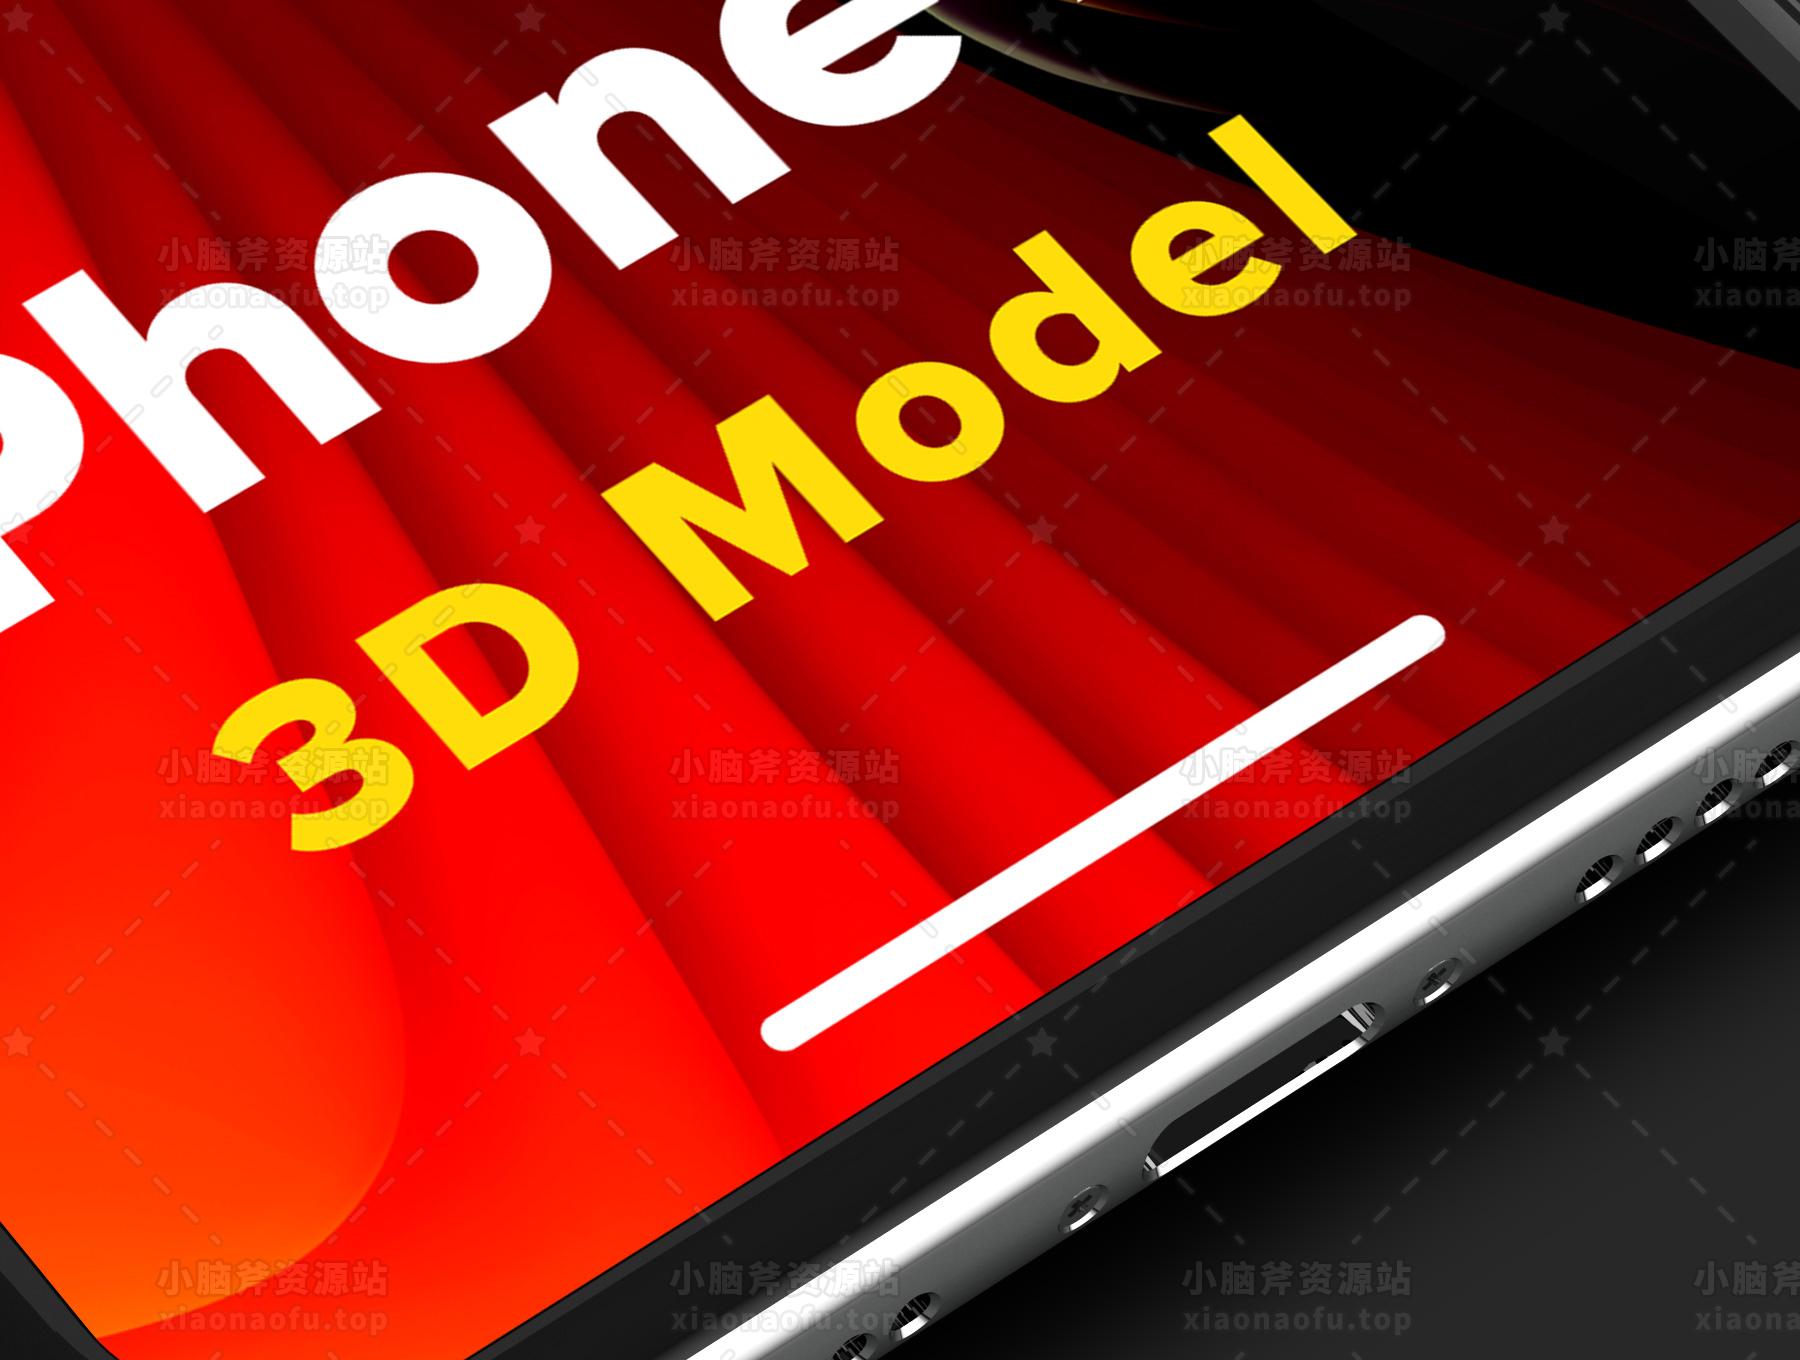 iPhone X 3D 模型(iPhone X 3D Model)